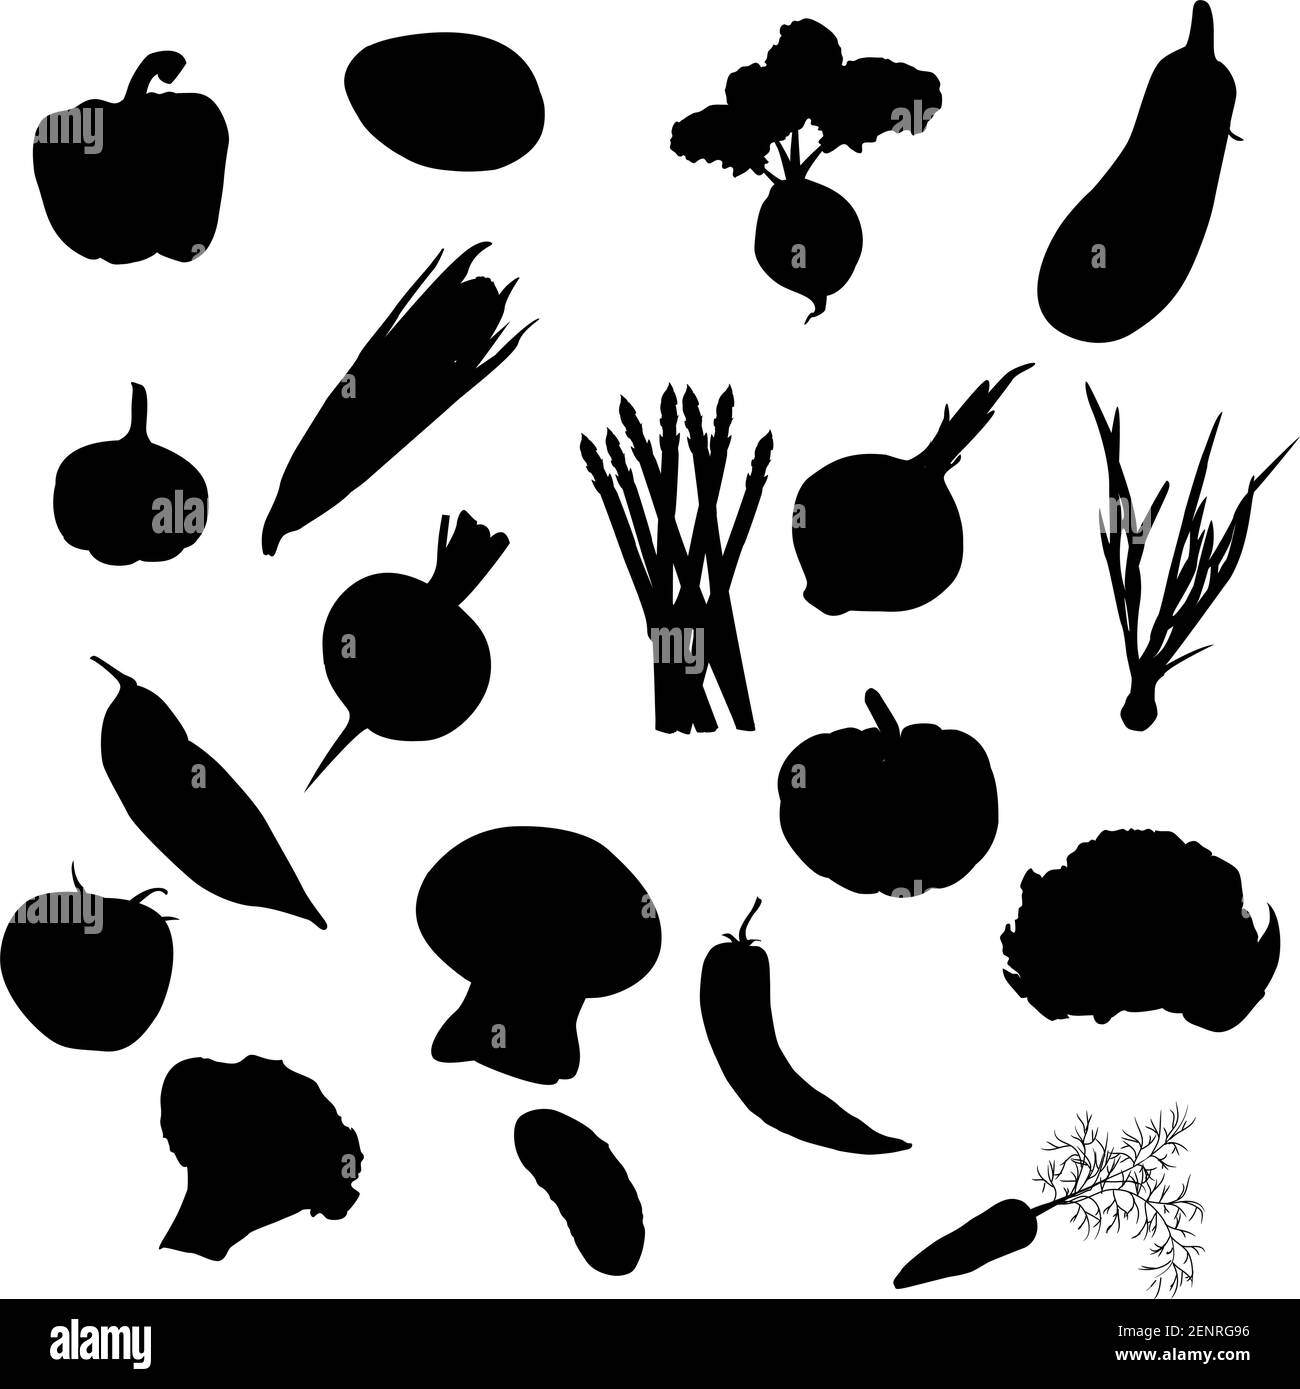 Le icone delle verdure vettoriali impostano la silhouette nera isolata su uno sfondo bianco. Illustrazione Vettoriale